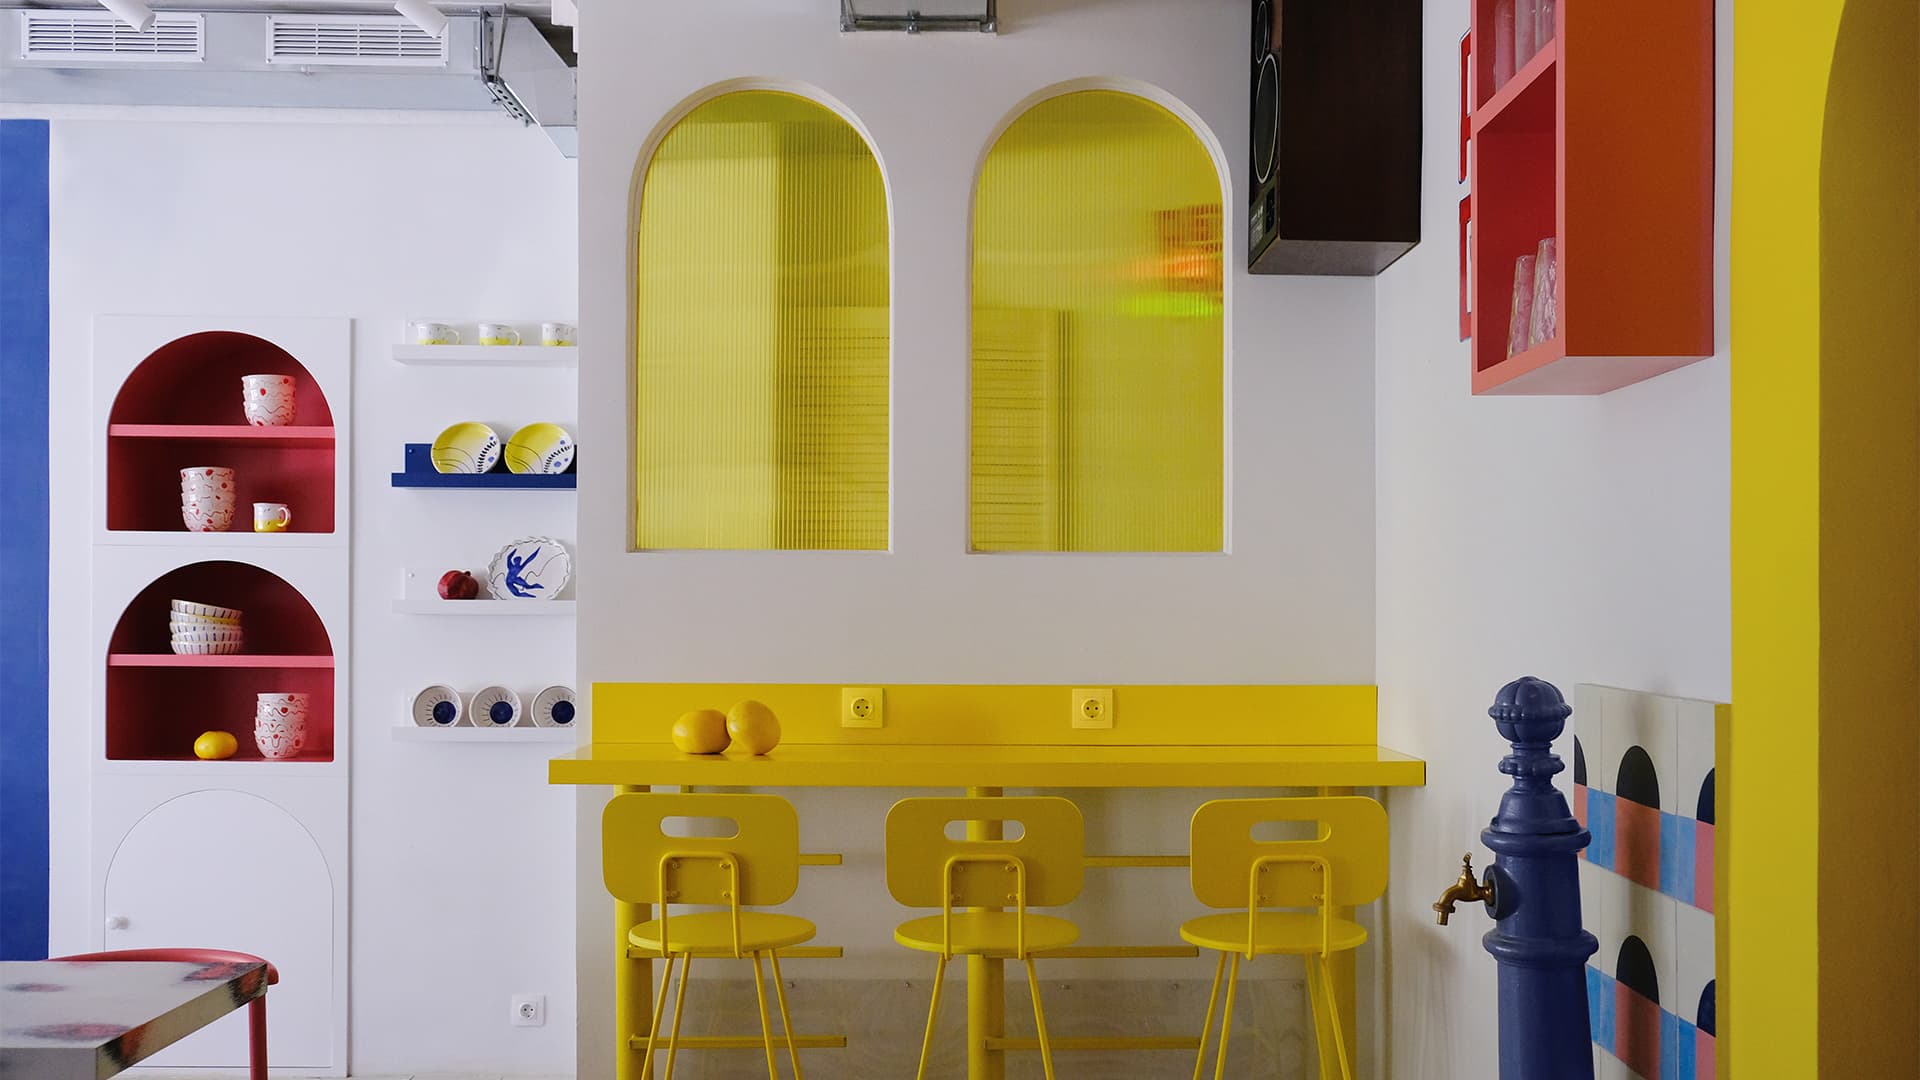 Геометрическая абстракция и яркие оттенки в интерьере кафе «Абу-Гош» – проект STUDIO SHOO